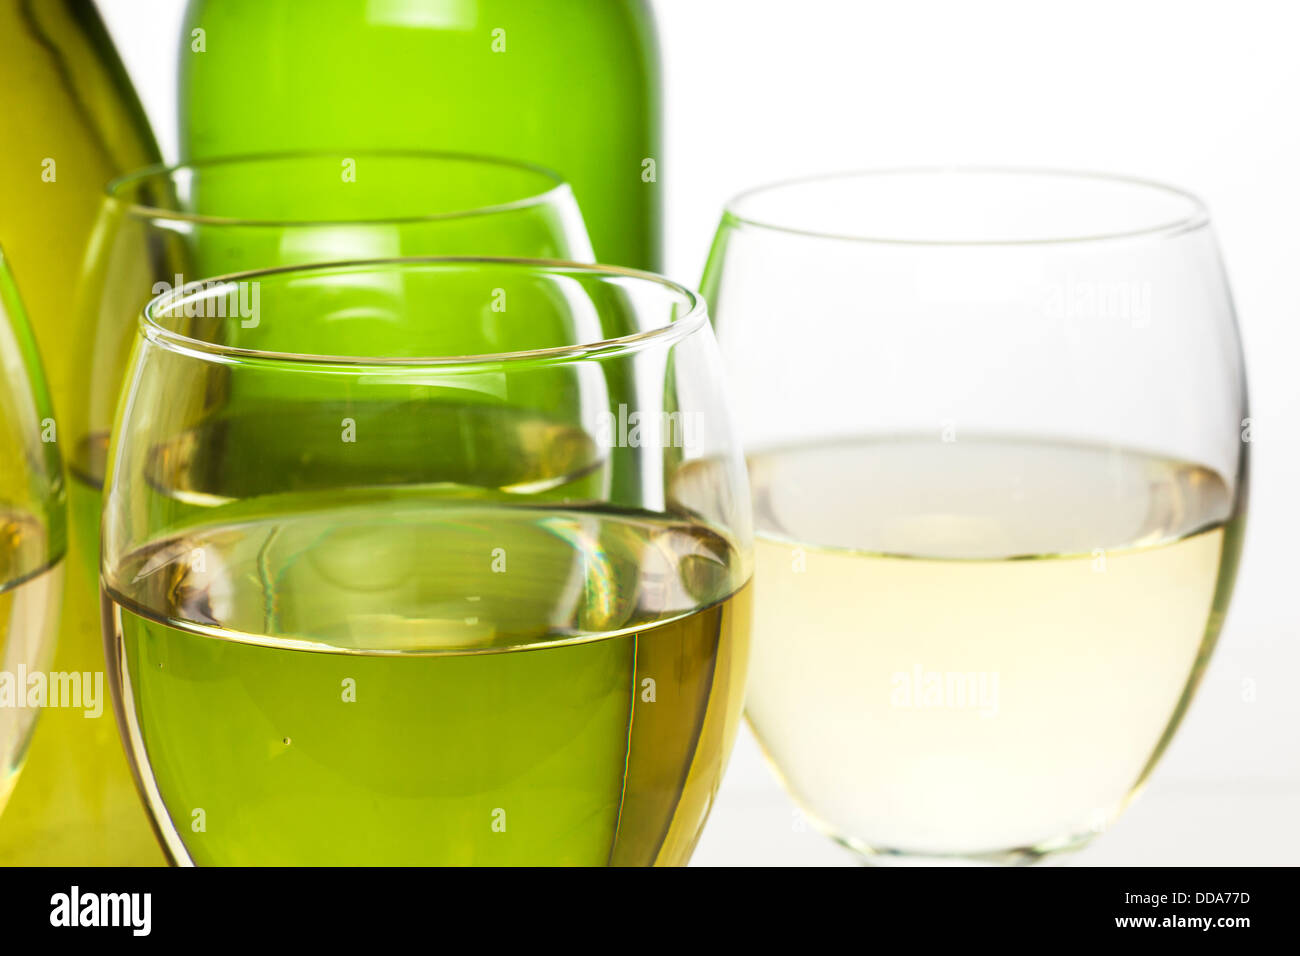 Wein-Gläser und Flaschen - Gläser Weißwein und Flaschen auf weißem Hintergrund. Stockfoto